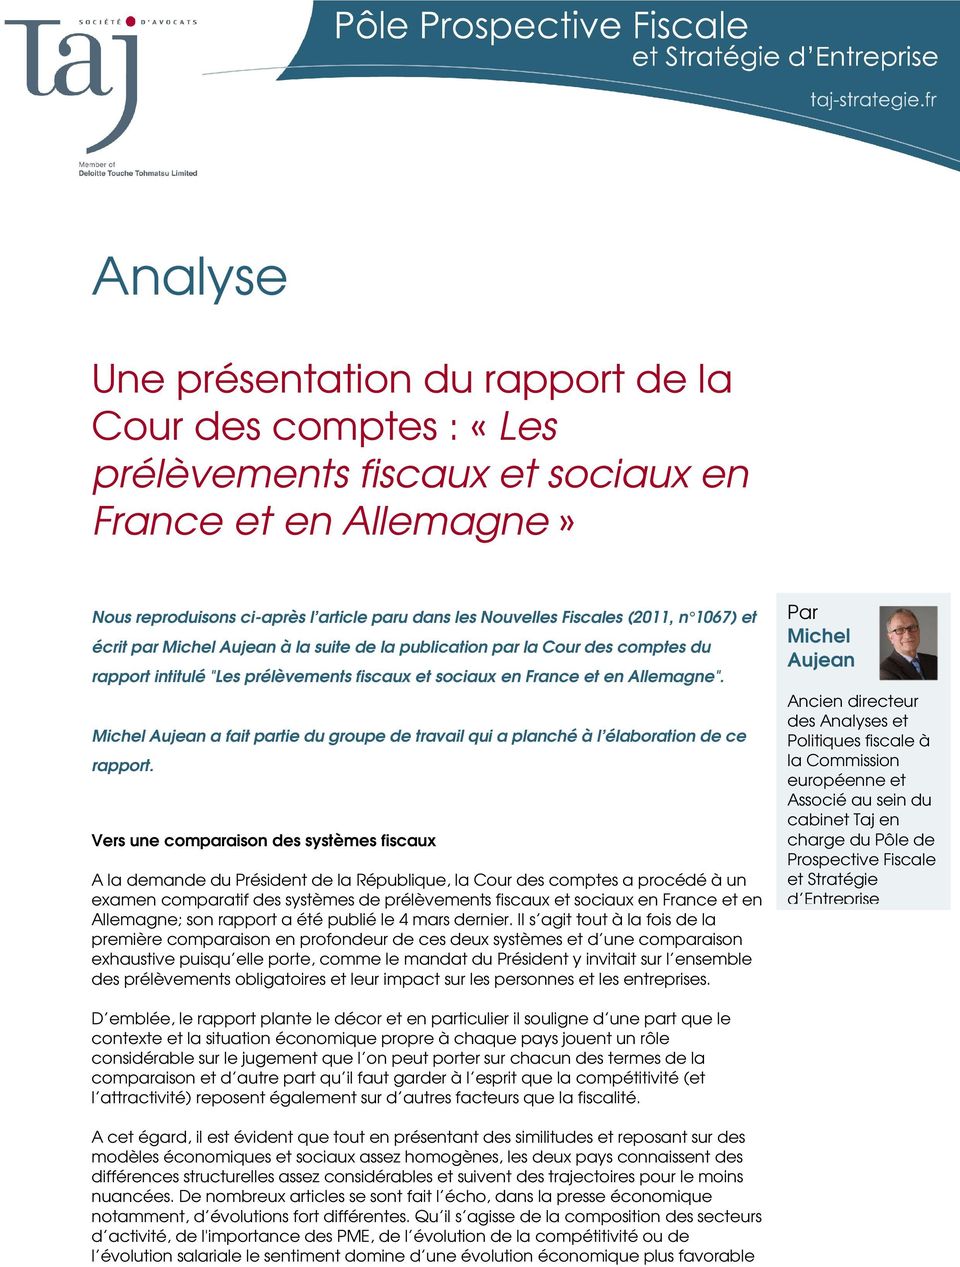 Michel Aujean a fait partie du groupe de travail qui a planché à l élaboration de ce rapport.